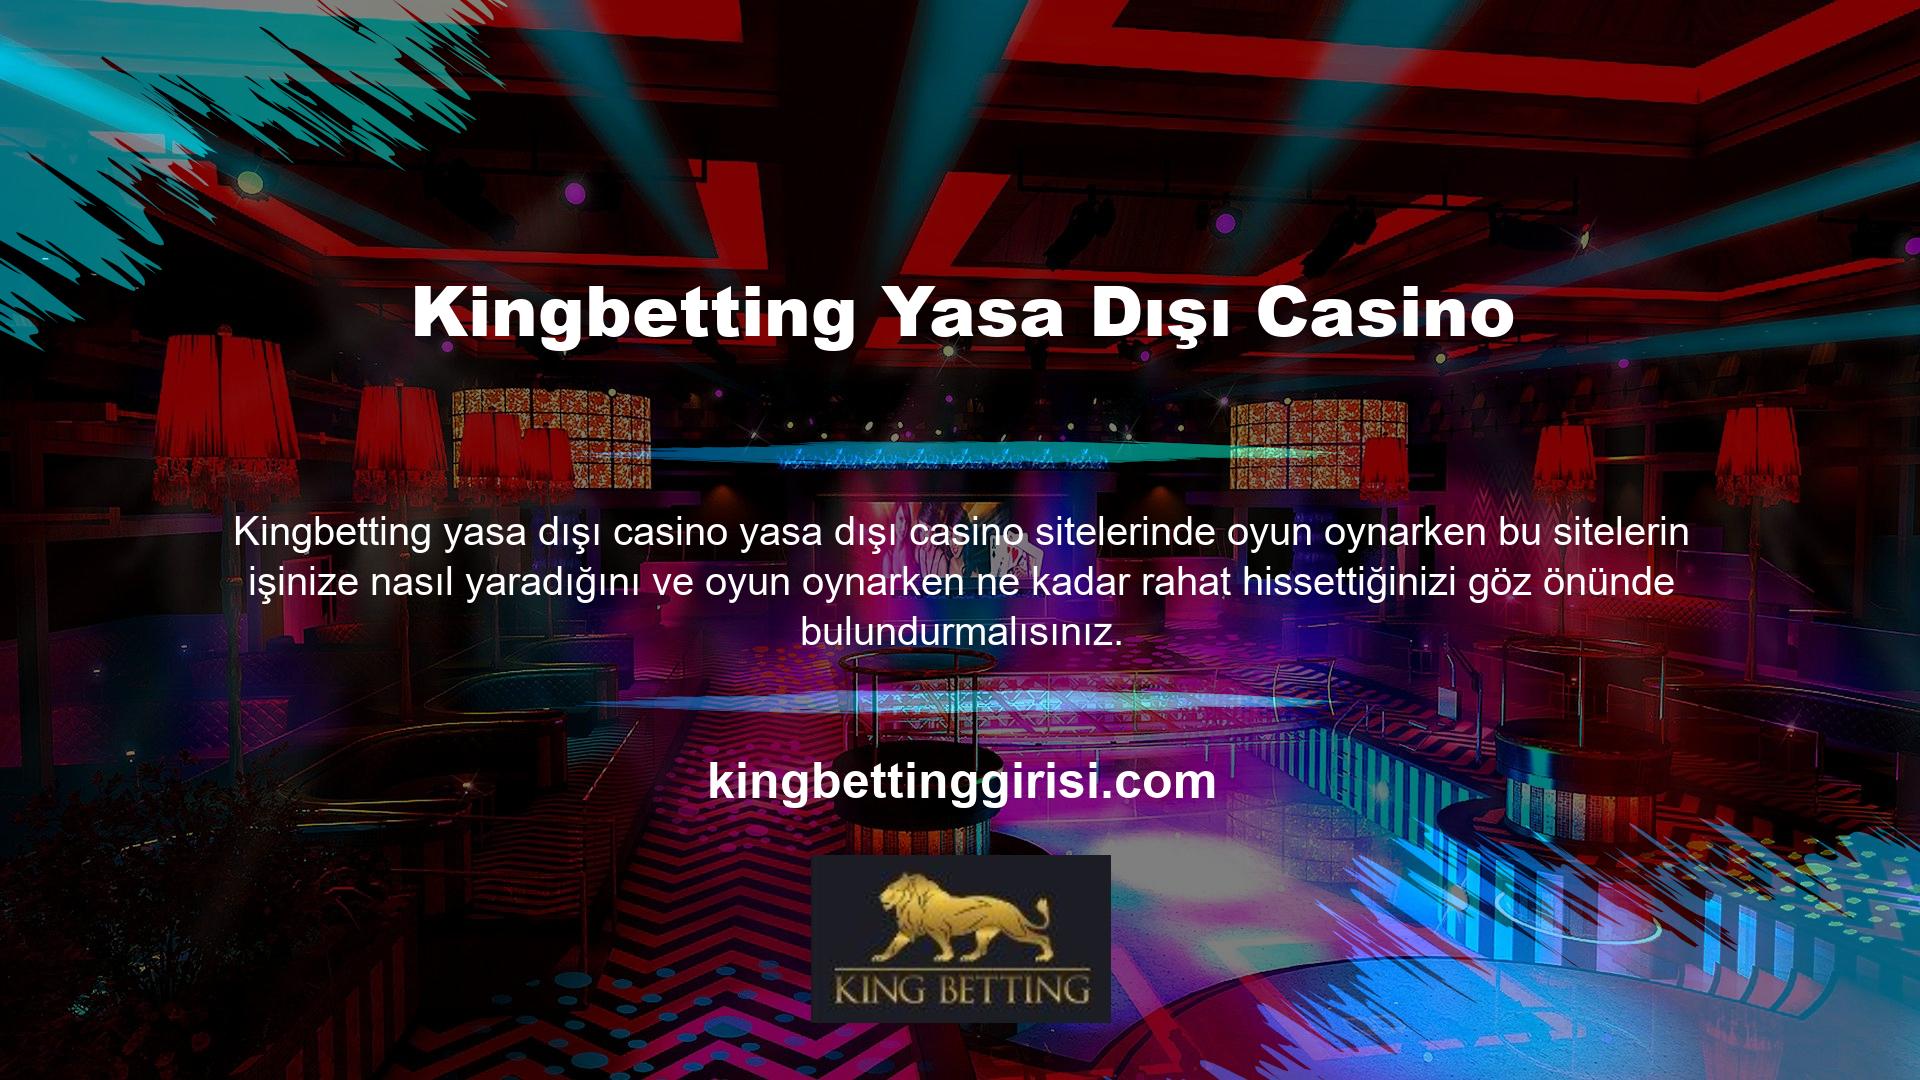 Canlı casino oyunları oynamak isteyen herkesin öncelikle bahis sitesine üyelik oluşturması, hesabına giriş yapması ve bu oyunları oynamak için üyelik depozito fonu oluşturması gerekmektedir